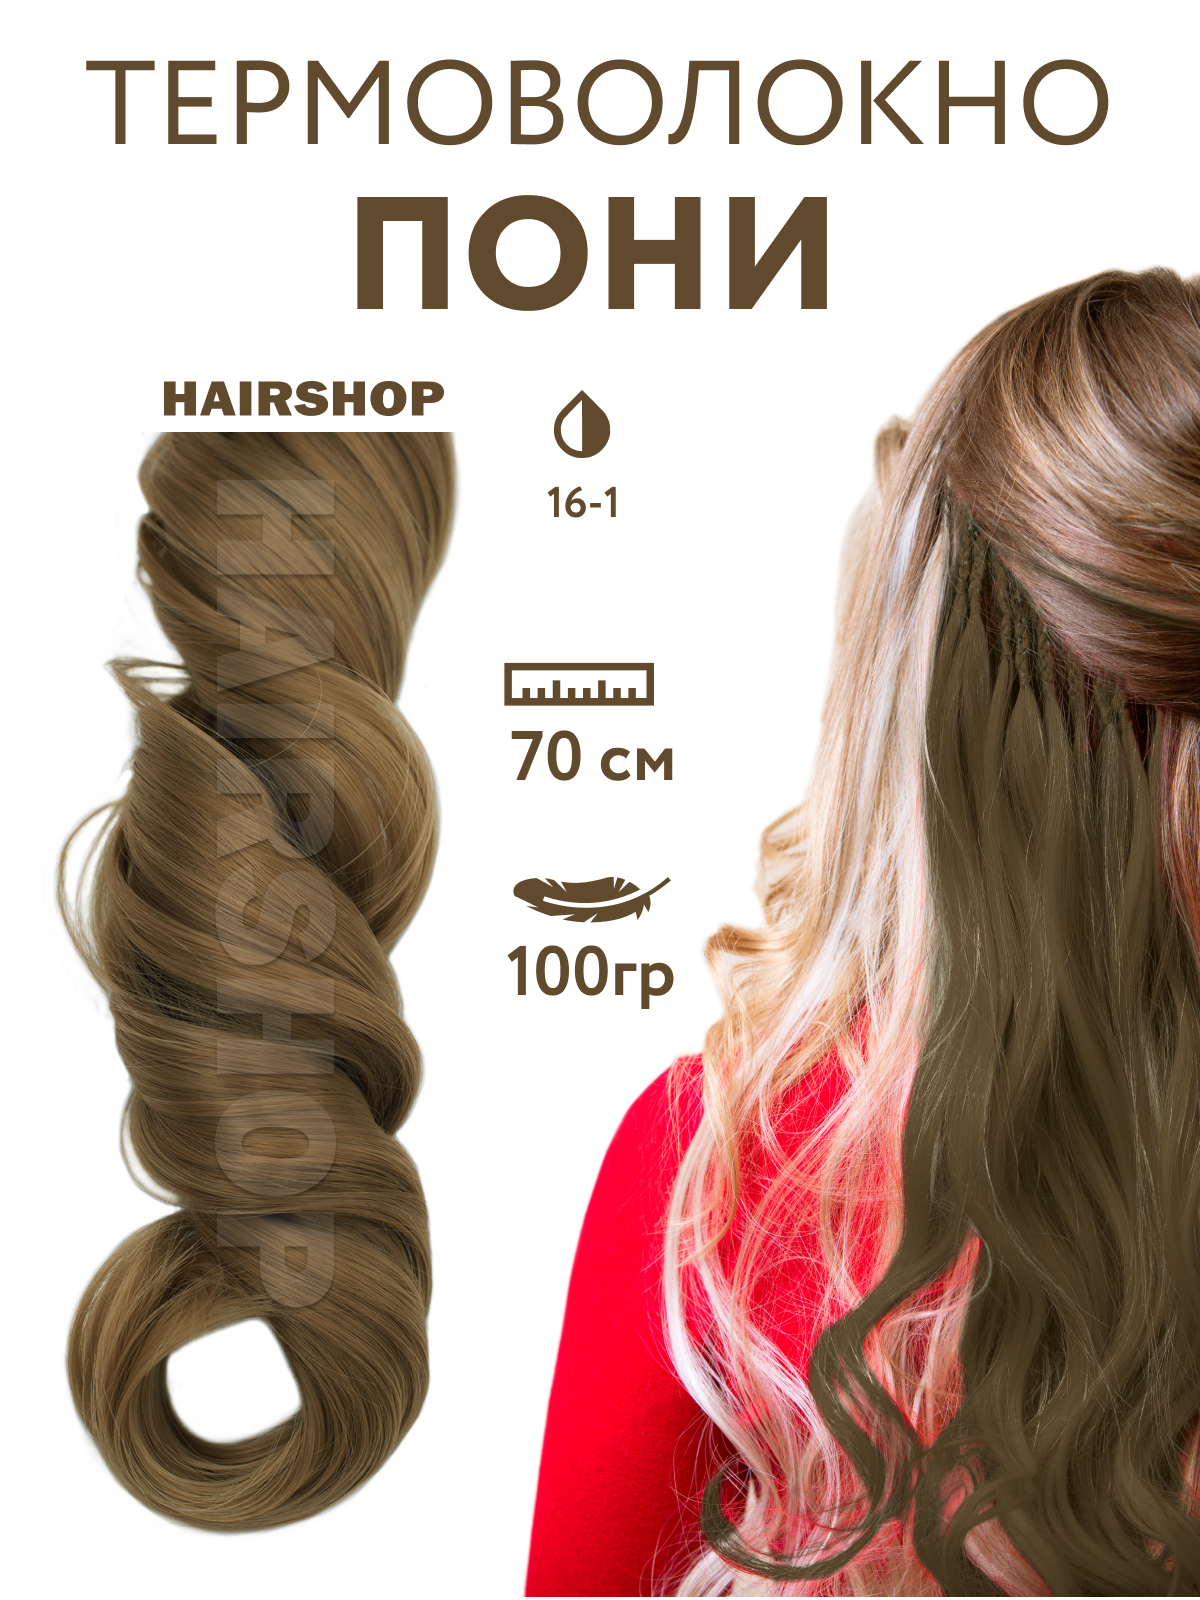 Канекалон Hairshop Пони HairUp для точечного афронаращивания 16-1 Пепельно-русый 1,4м канекалон hairshop пони hairup для точечного афронаращивания средне русый 1 4м